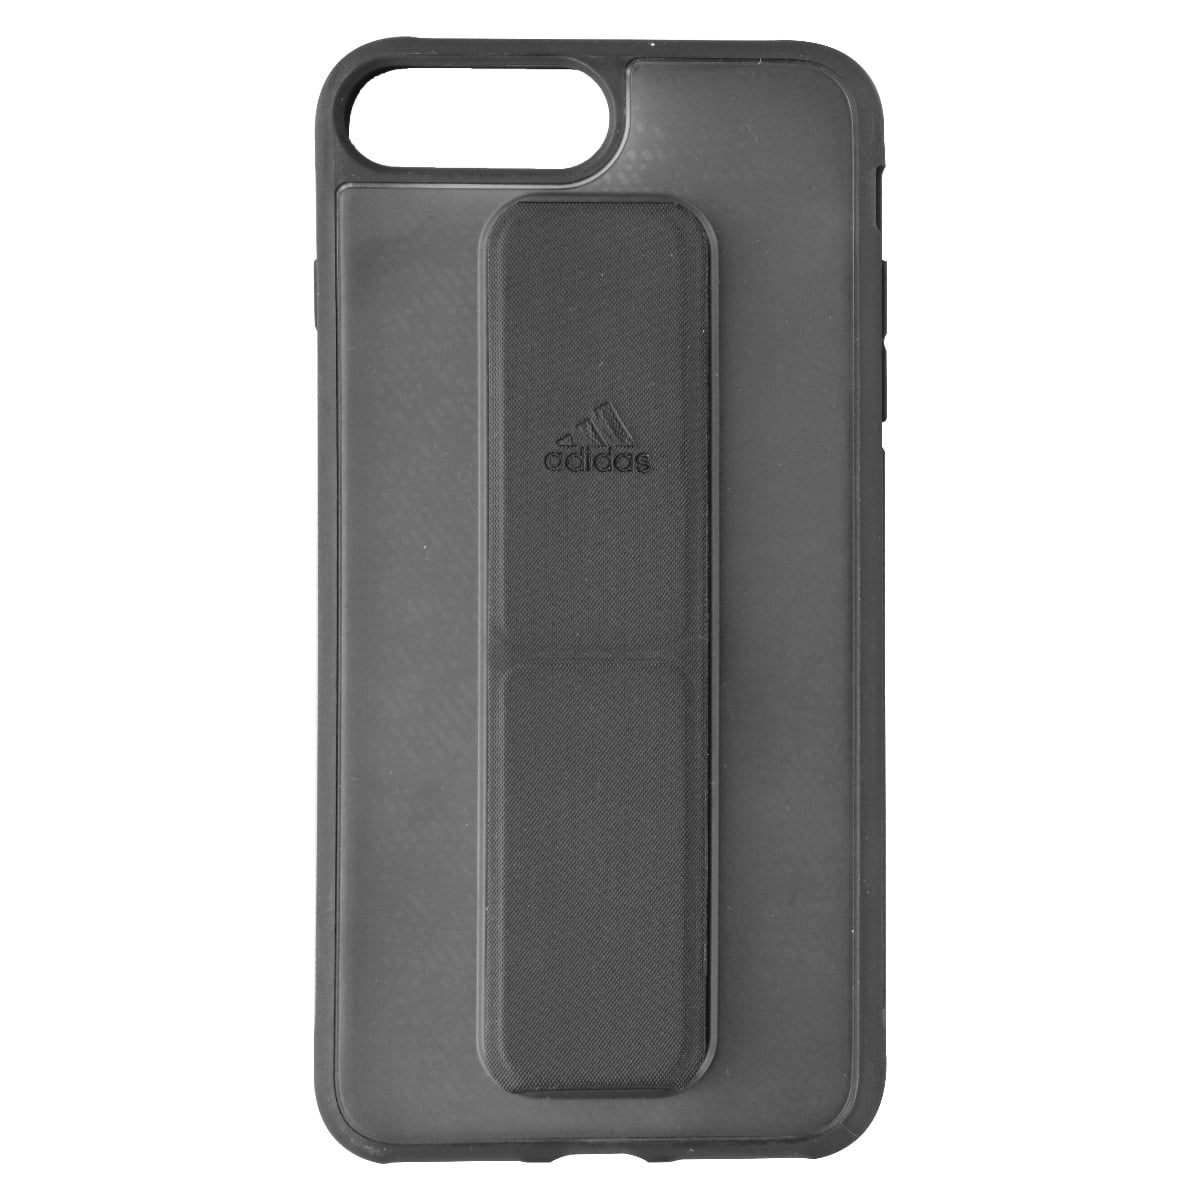 Grip Case for iPhone 6 Plus / 6s Plus / 7 Plus / 8 Plus Black NEW - Walmart.com